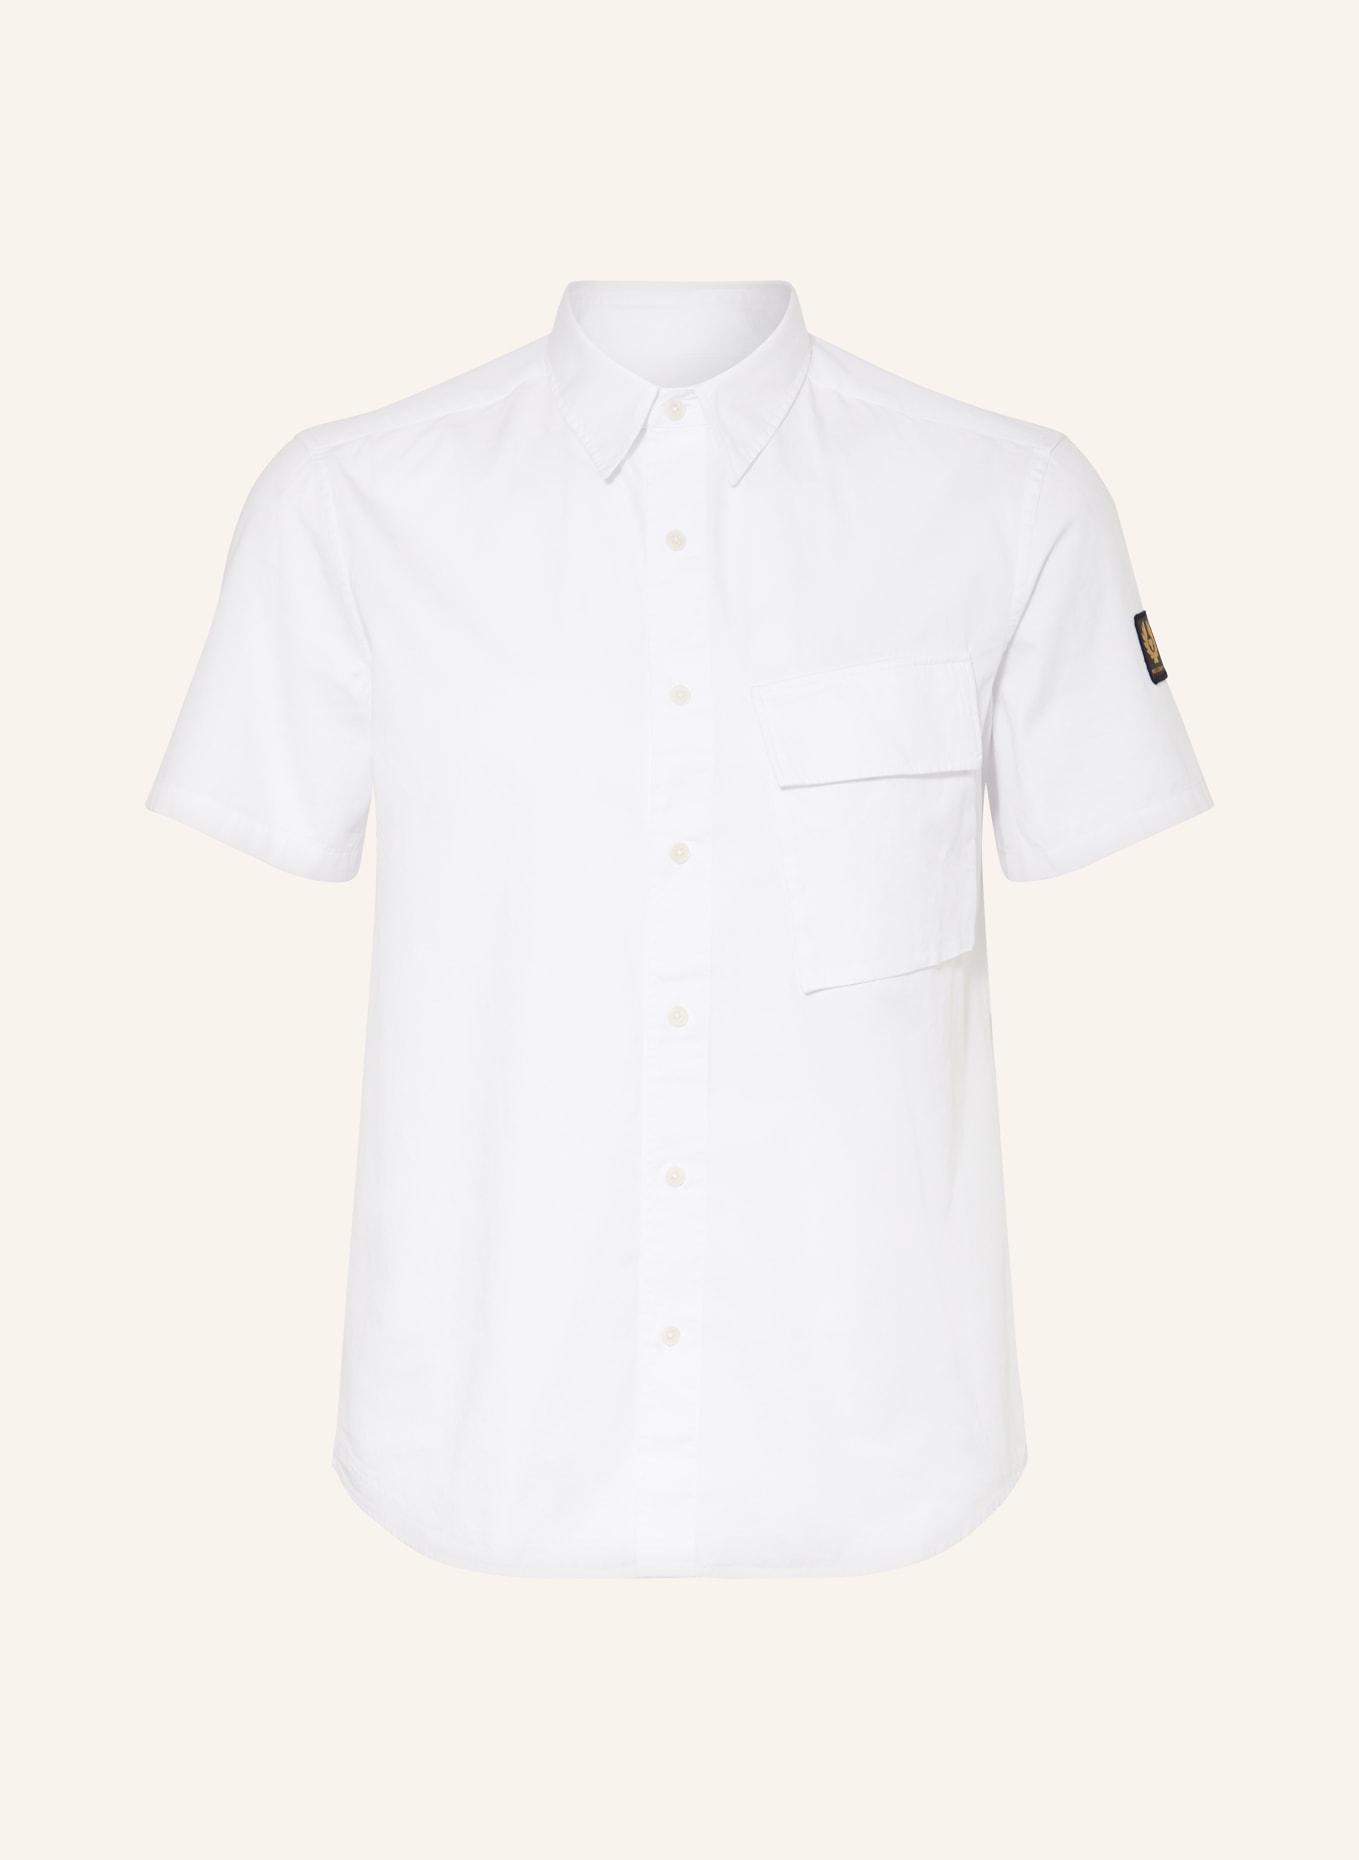 BELSTAFF Short sleeve shirt regular fit, Color: WHITE (Image 1)